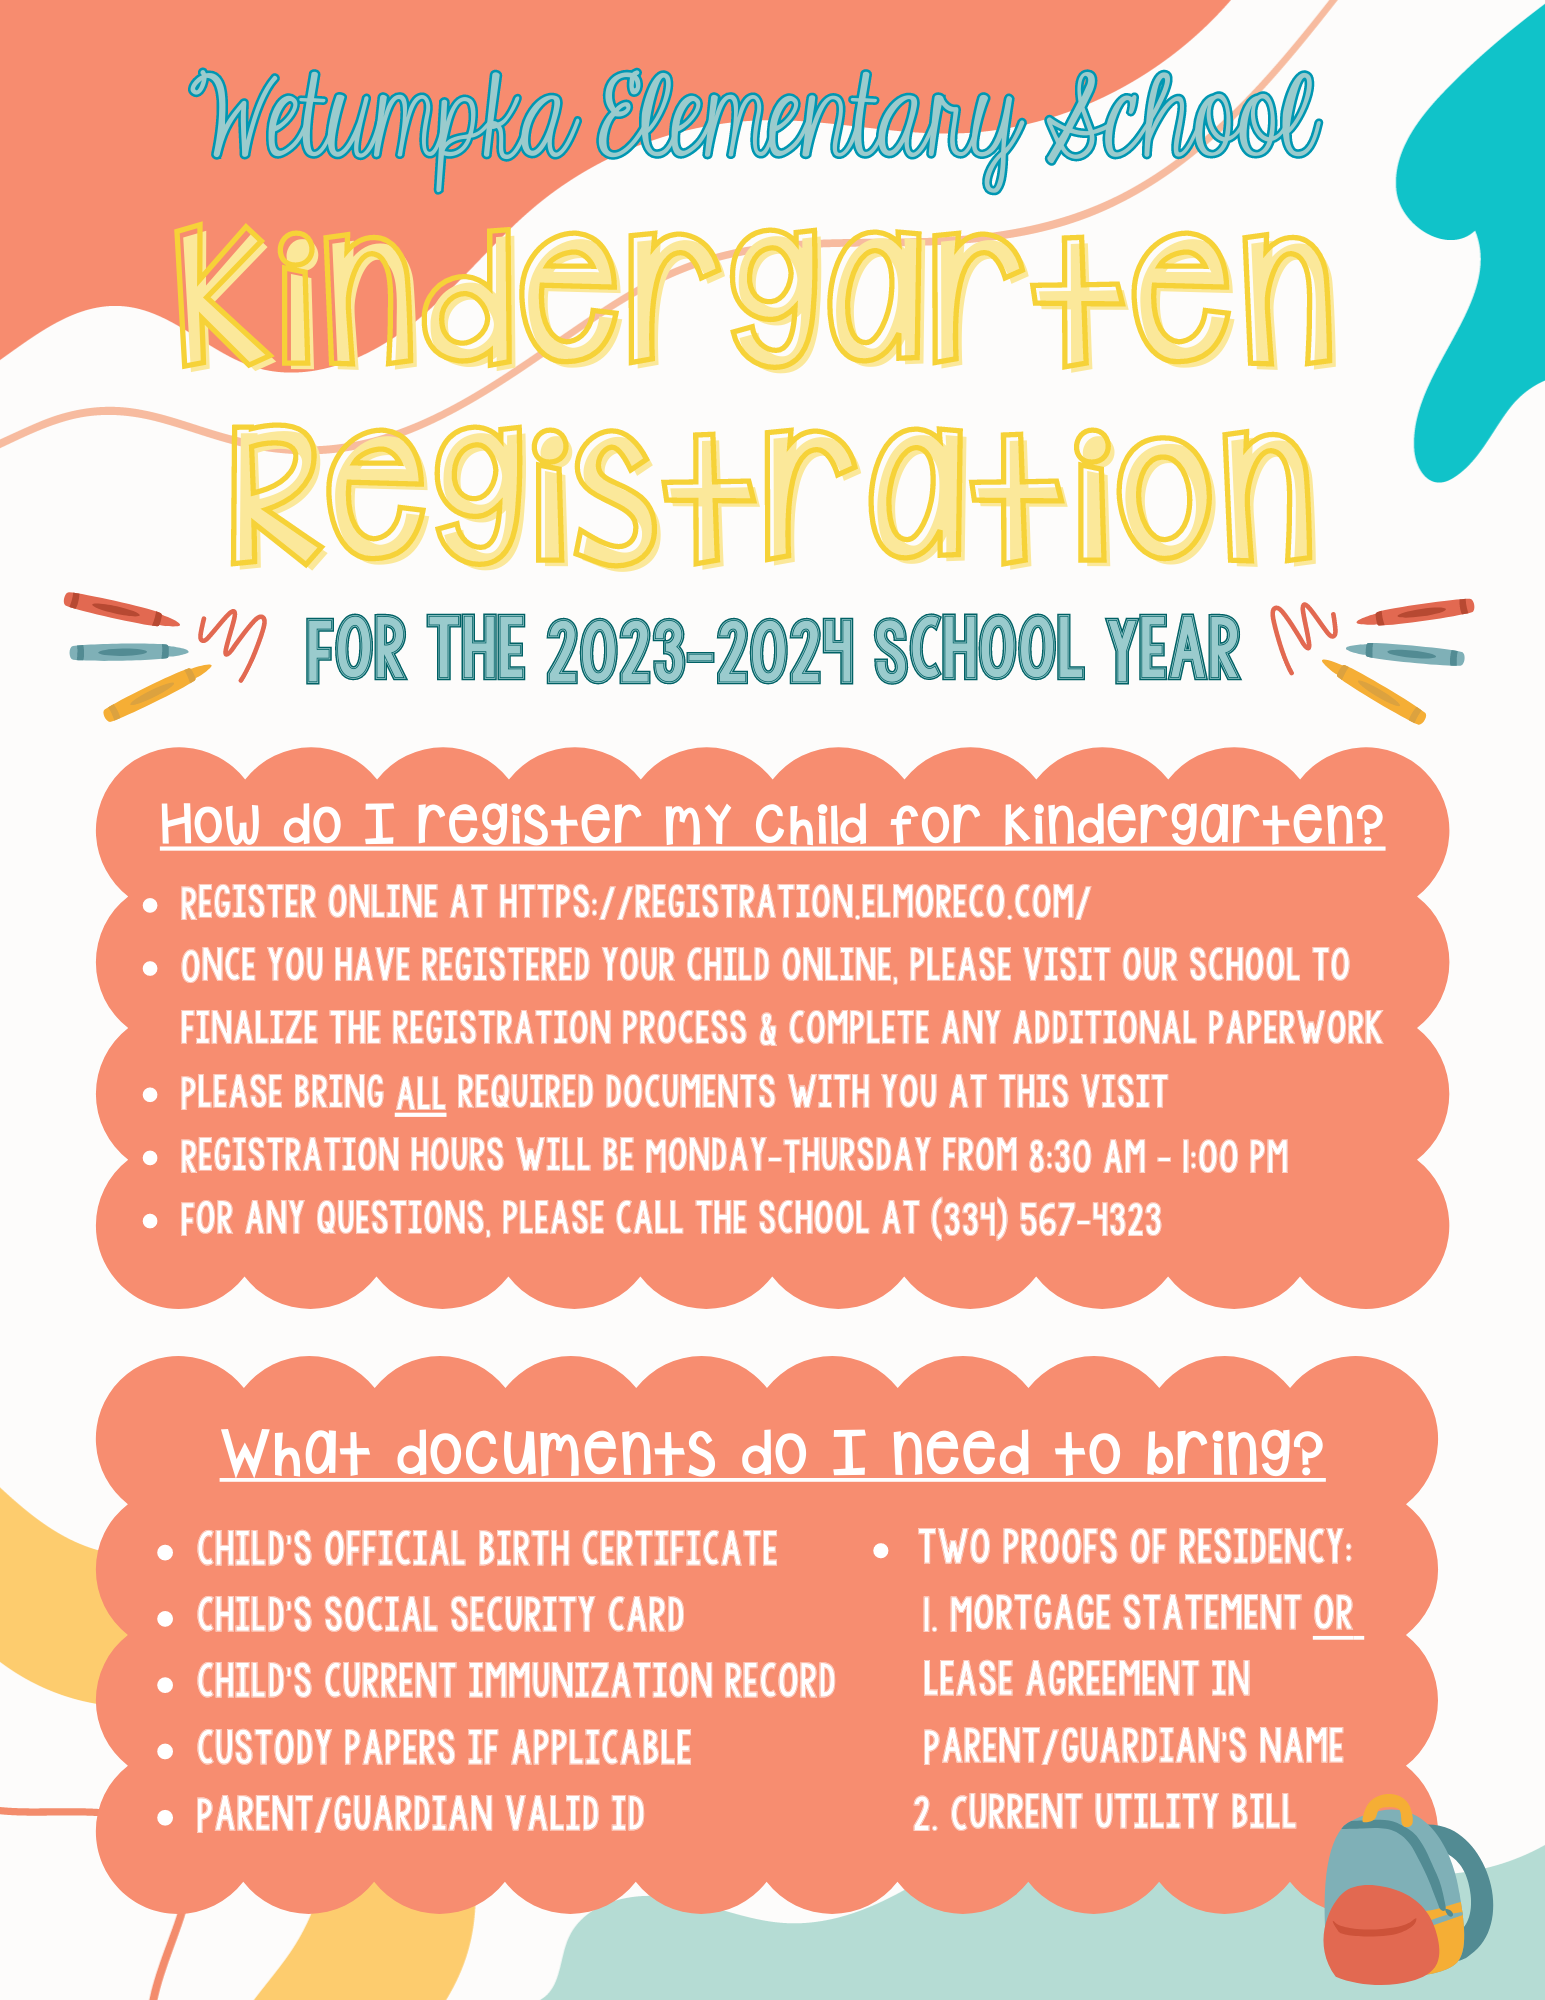 kinder registration information